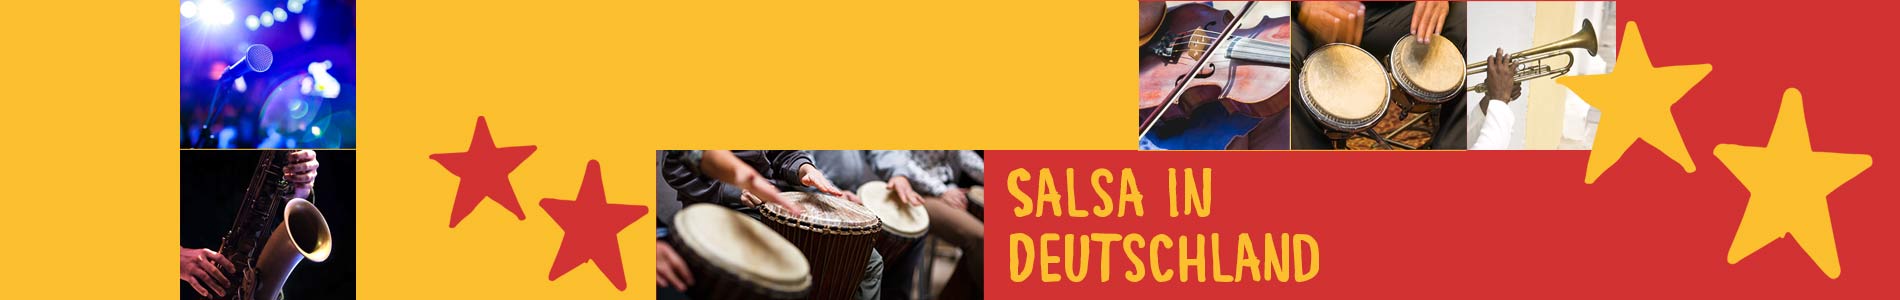 Salsa in Contwig – Salsa lernen und tanzen, Tanzkurse, Partys, Veranstaltungen